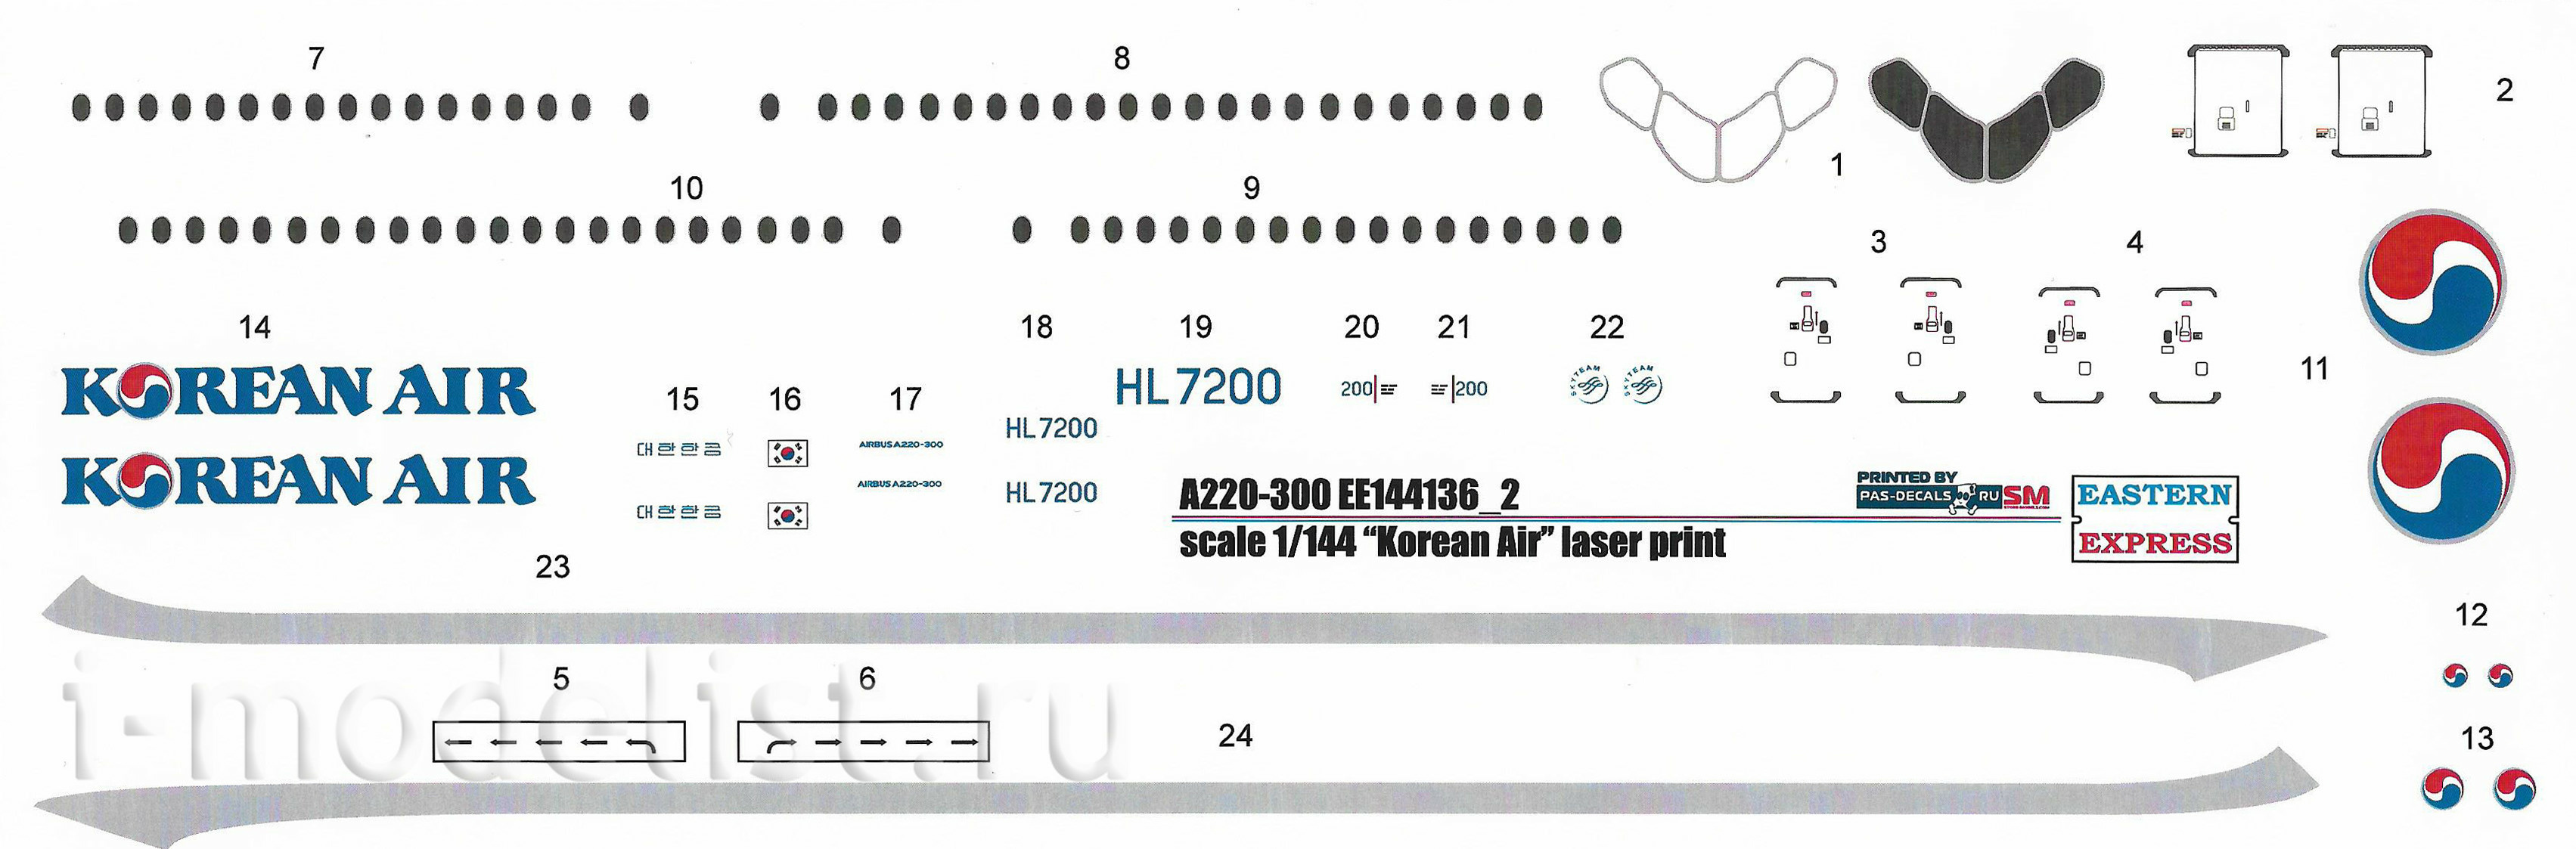 144136-2 Восточный экспресс 1/144 Авиалайнер  А220-300  Korean Air ( Limited Edition )